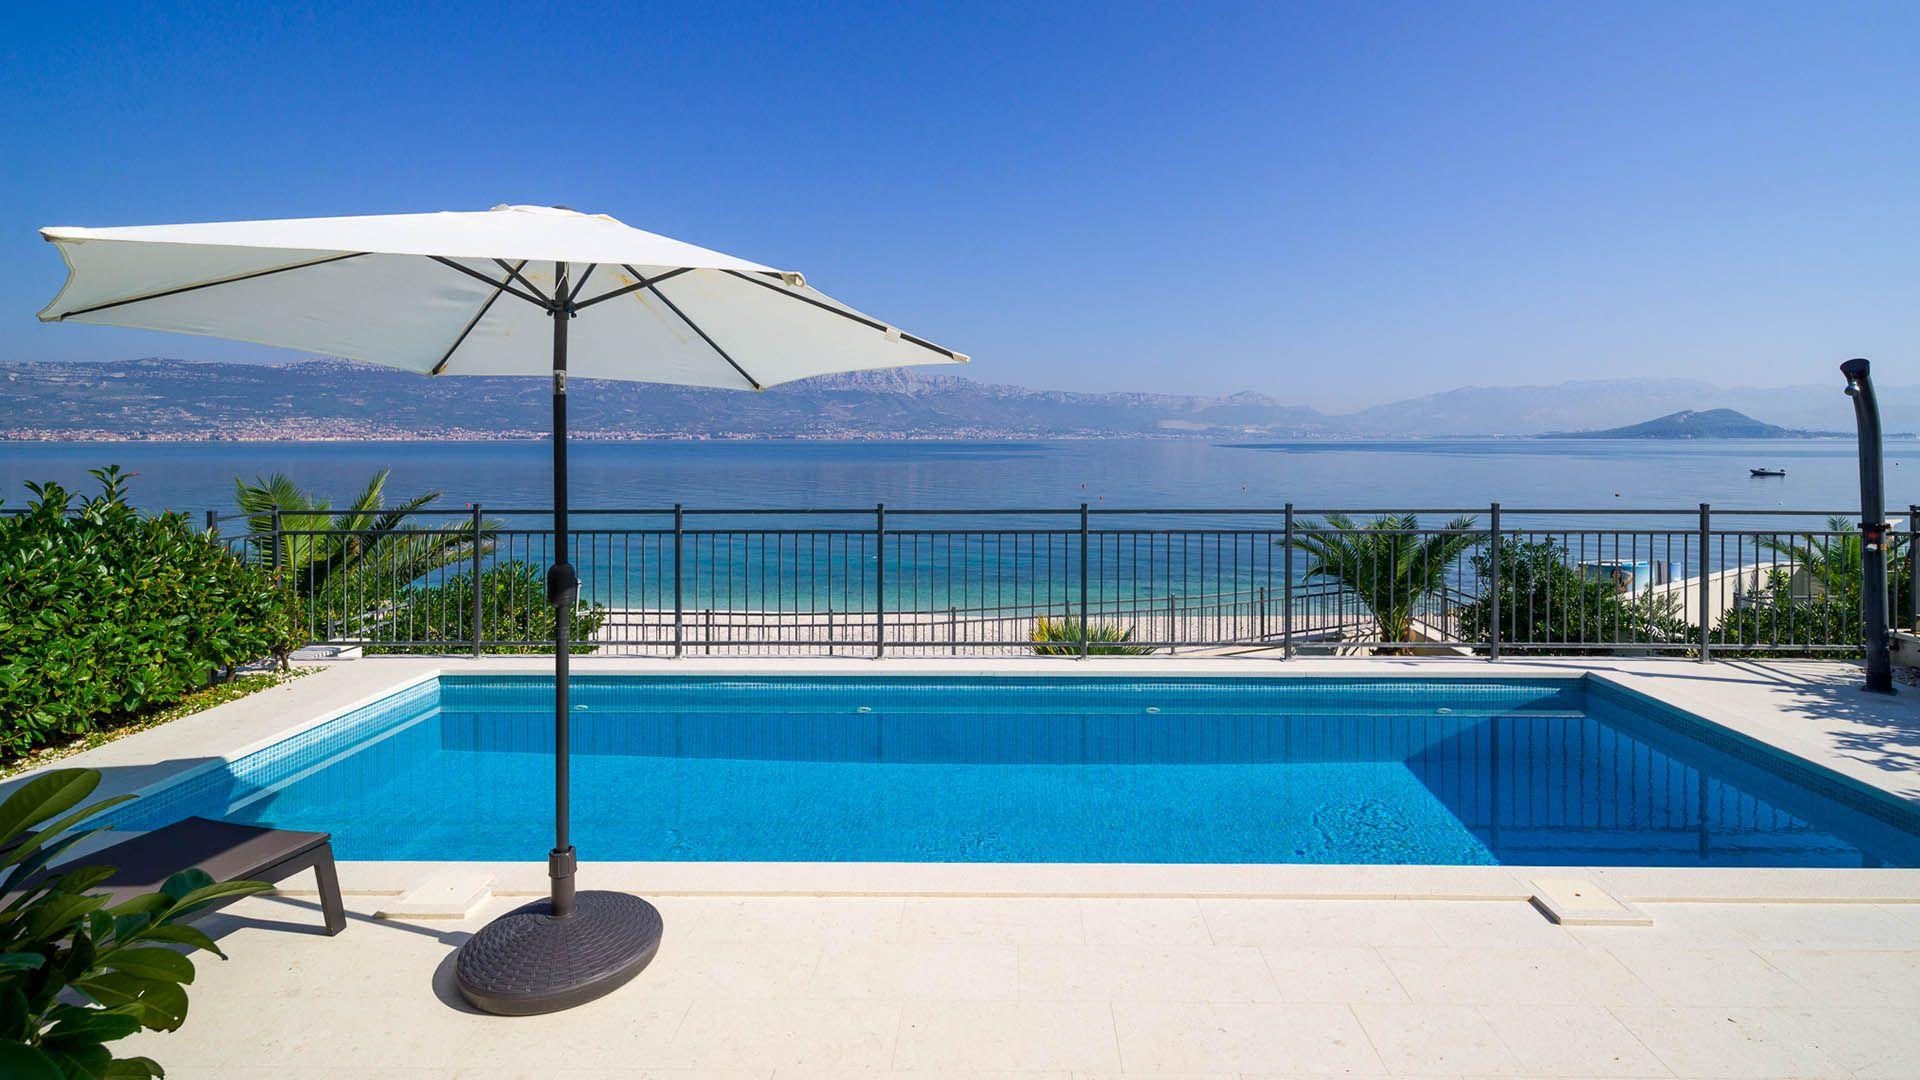 Ferienwohnung für 6 Personen ca. 150 m²   in Dalmatien